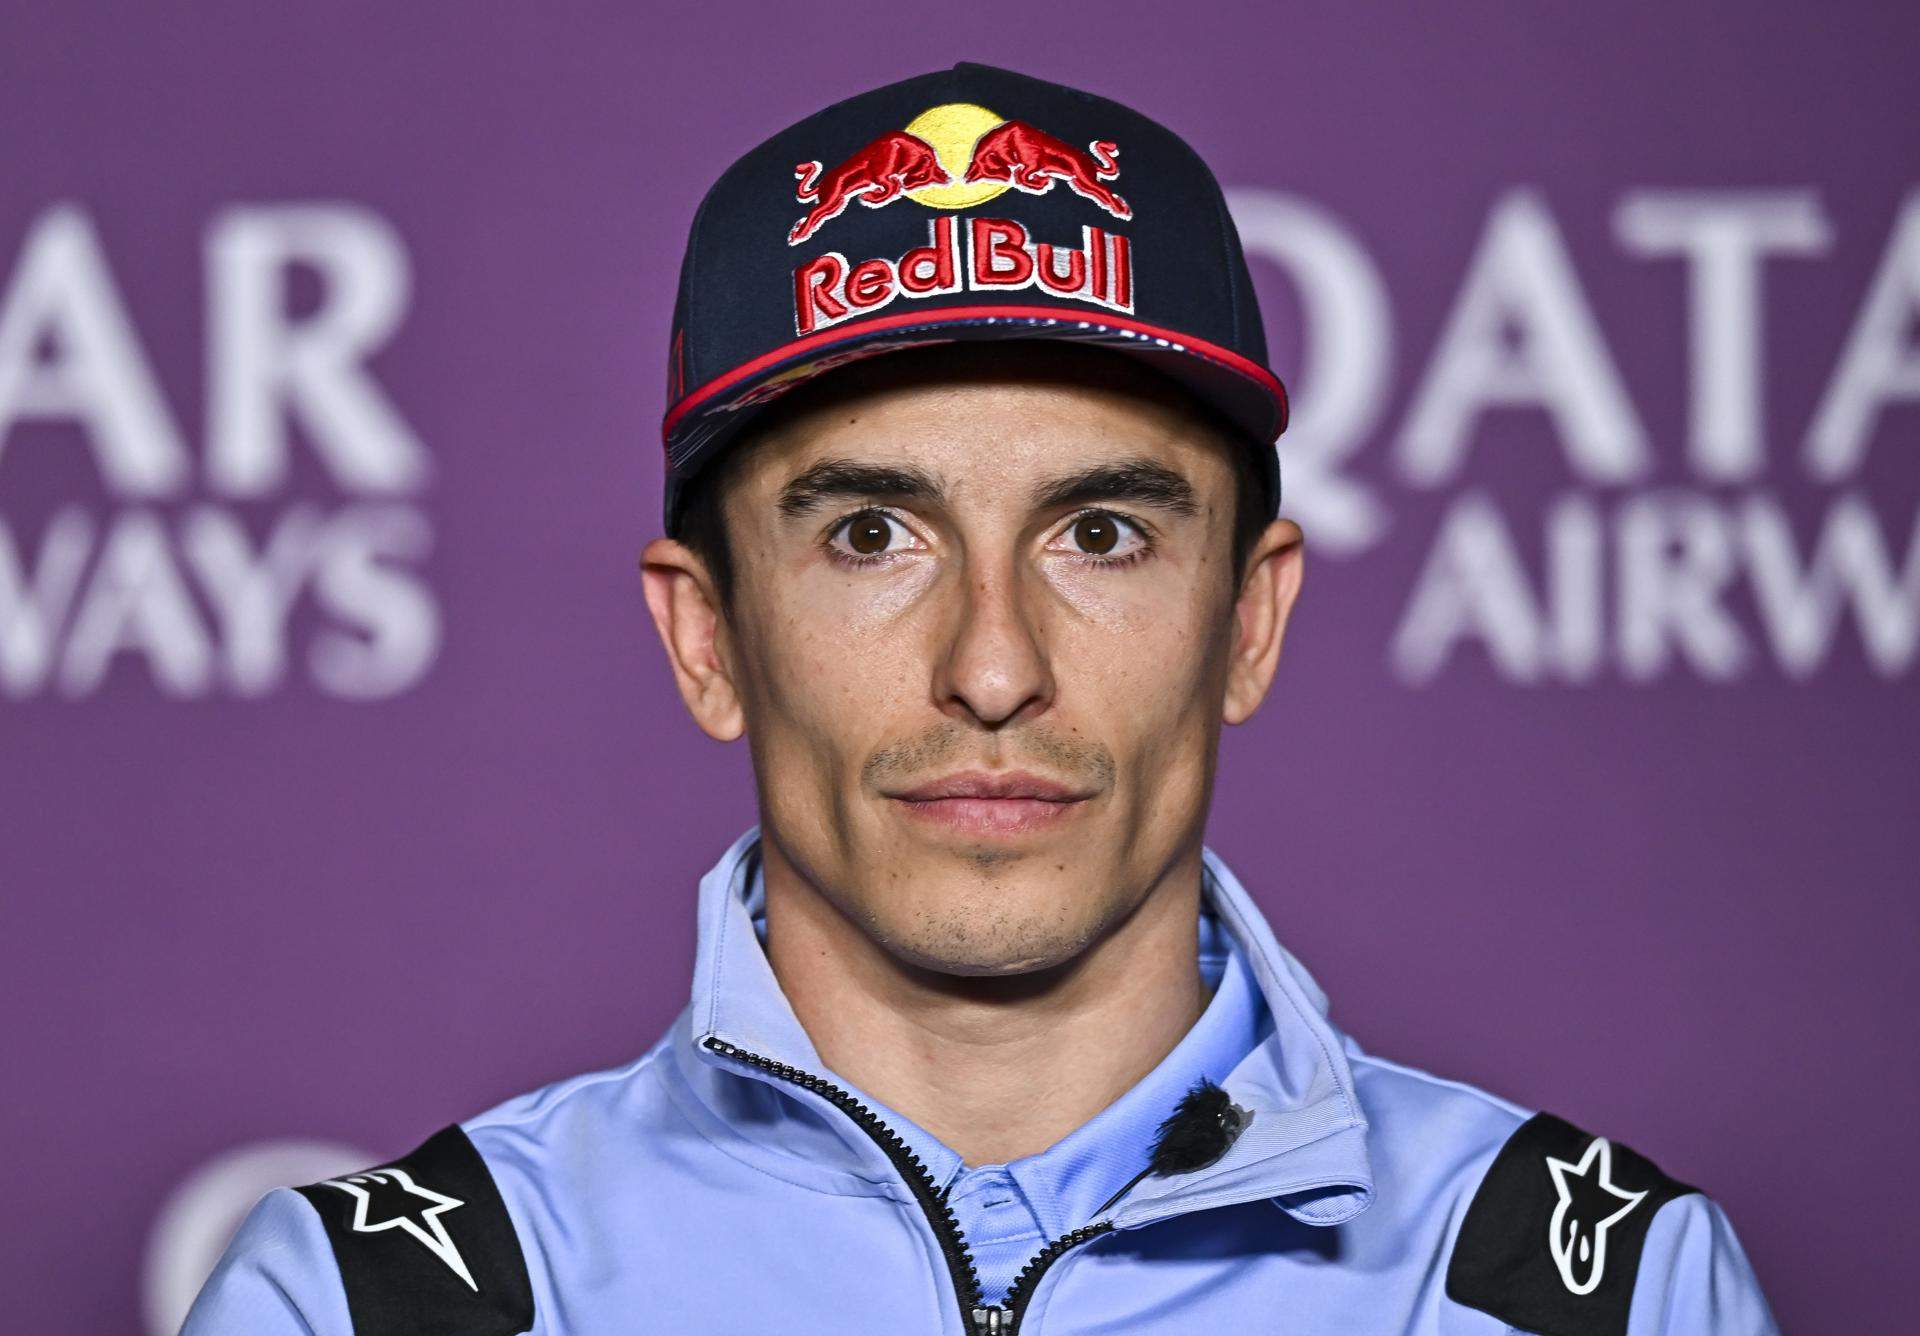 Ducati convierte a Marc Márquez en el hazmerreír de MotoGP